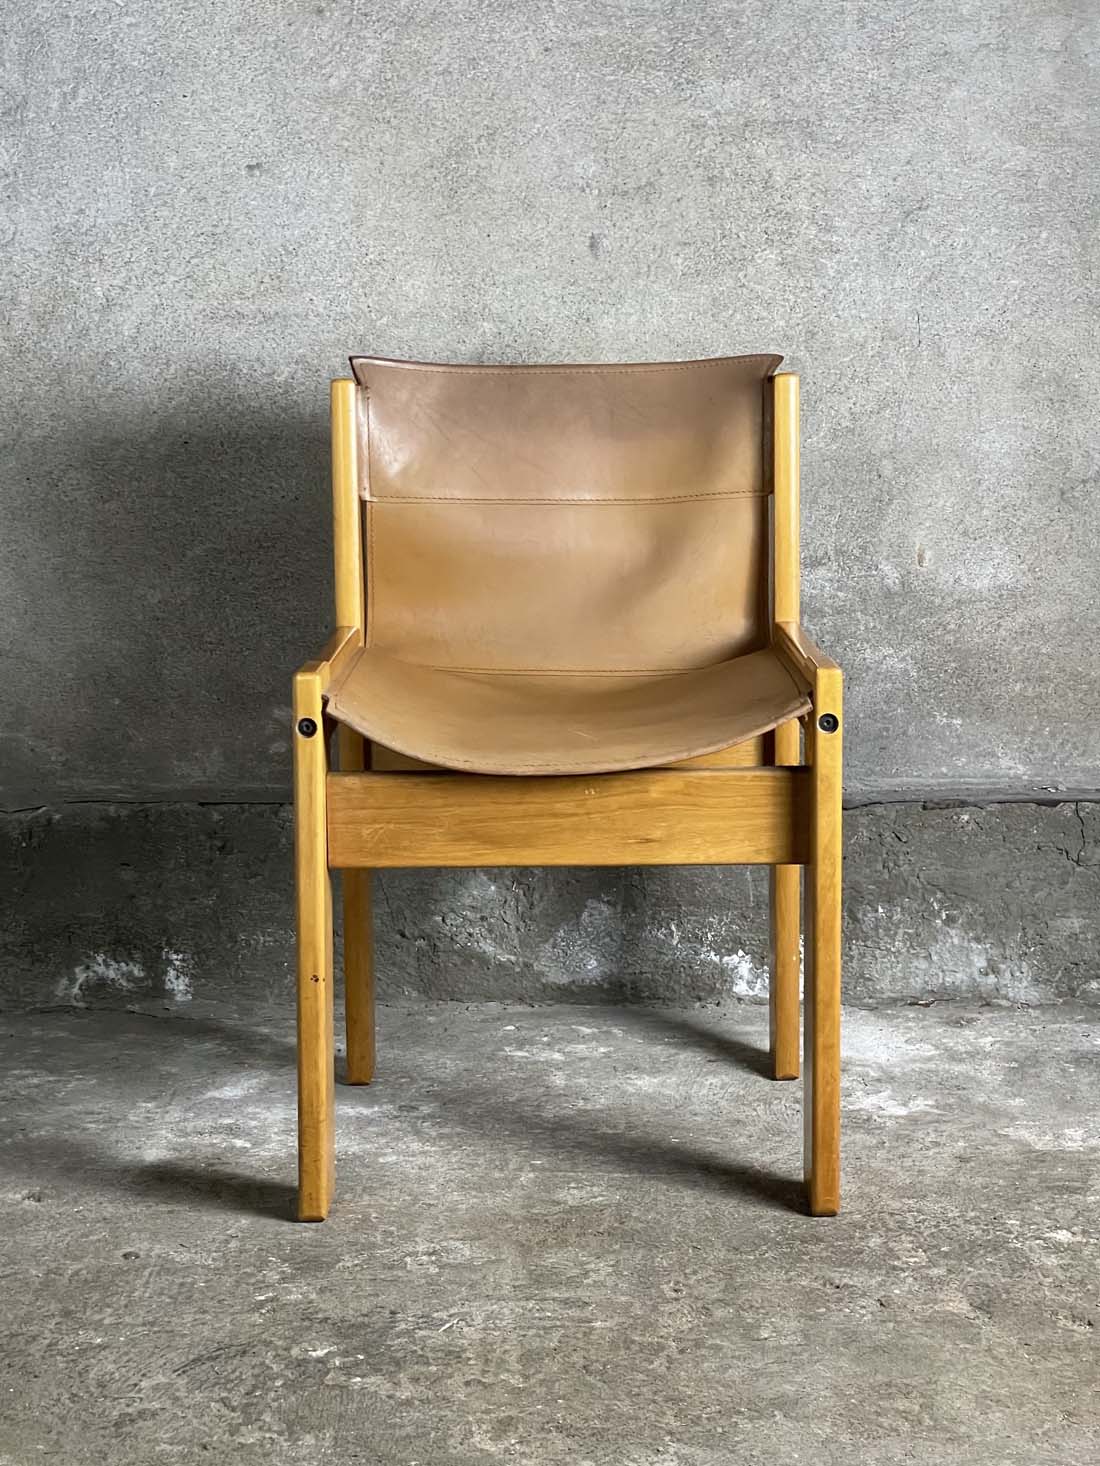 Ibisco Sedie, Włochy krzesła vintage krzeslarz